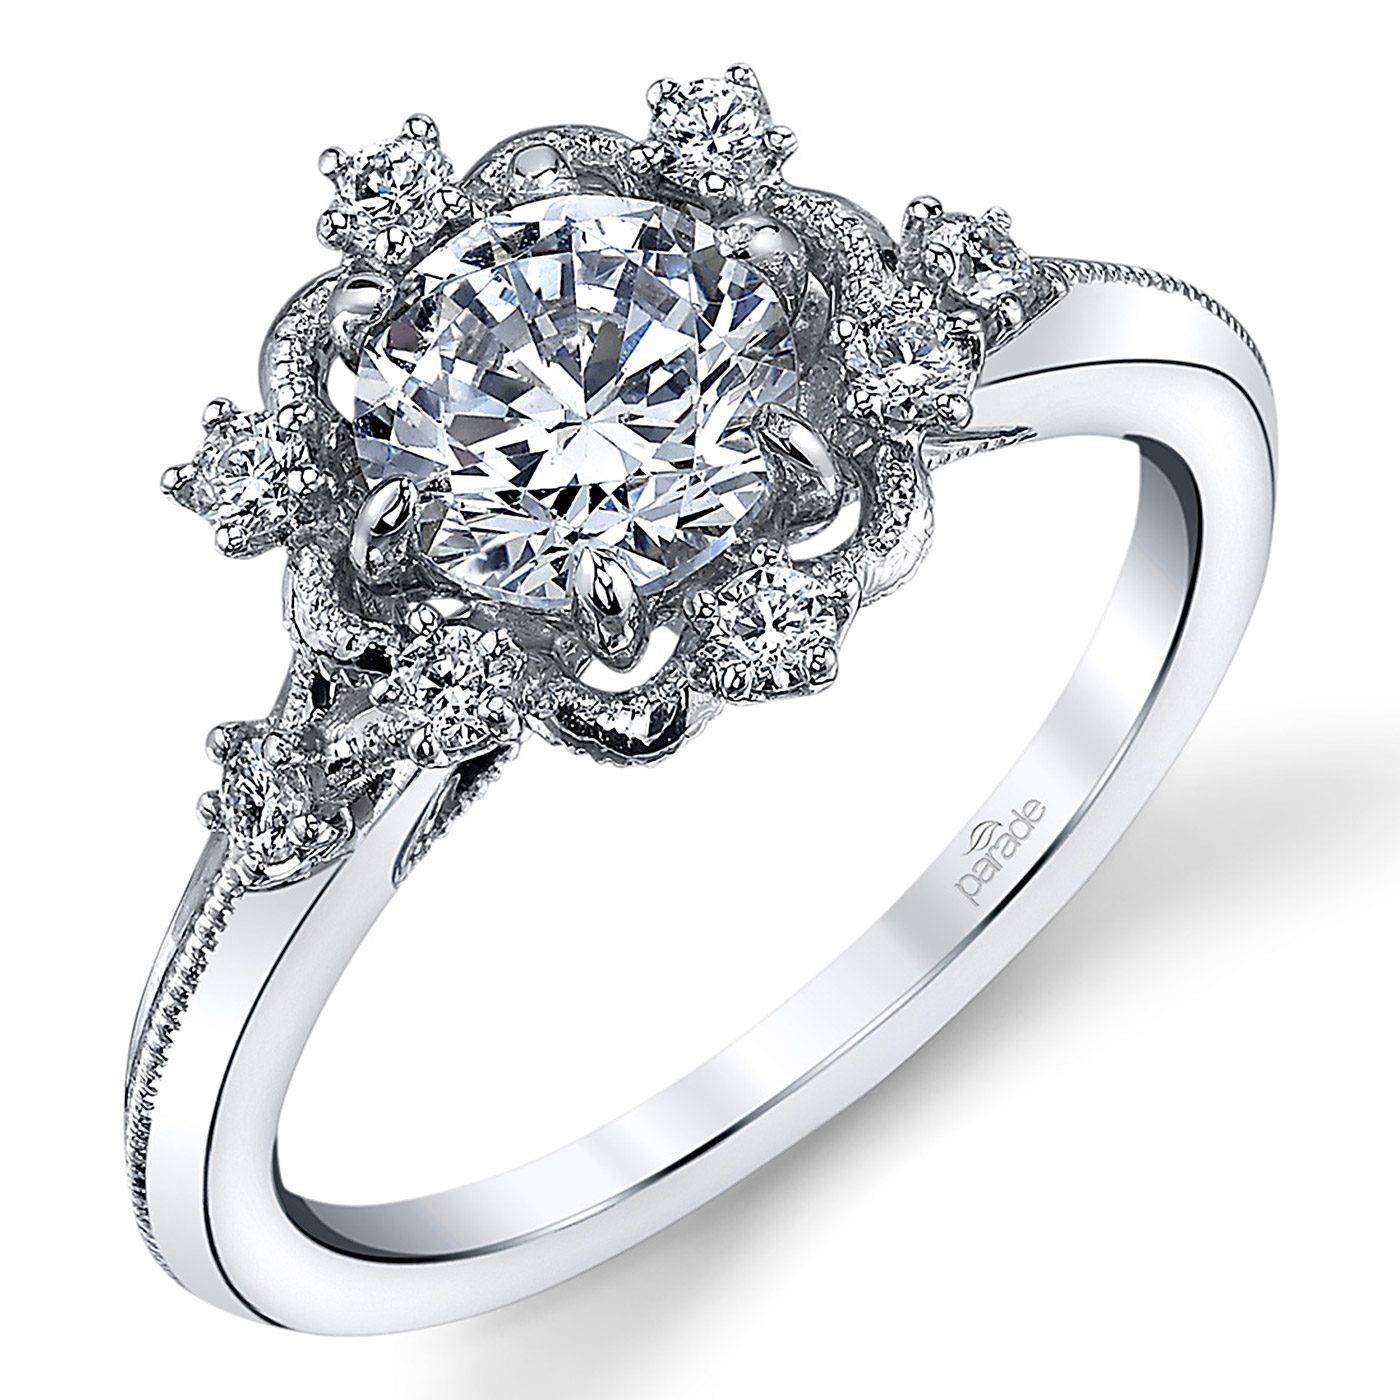 Parade Hera Bridal 18 Karat Diamond Engagement Ring R3905